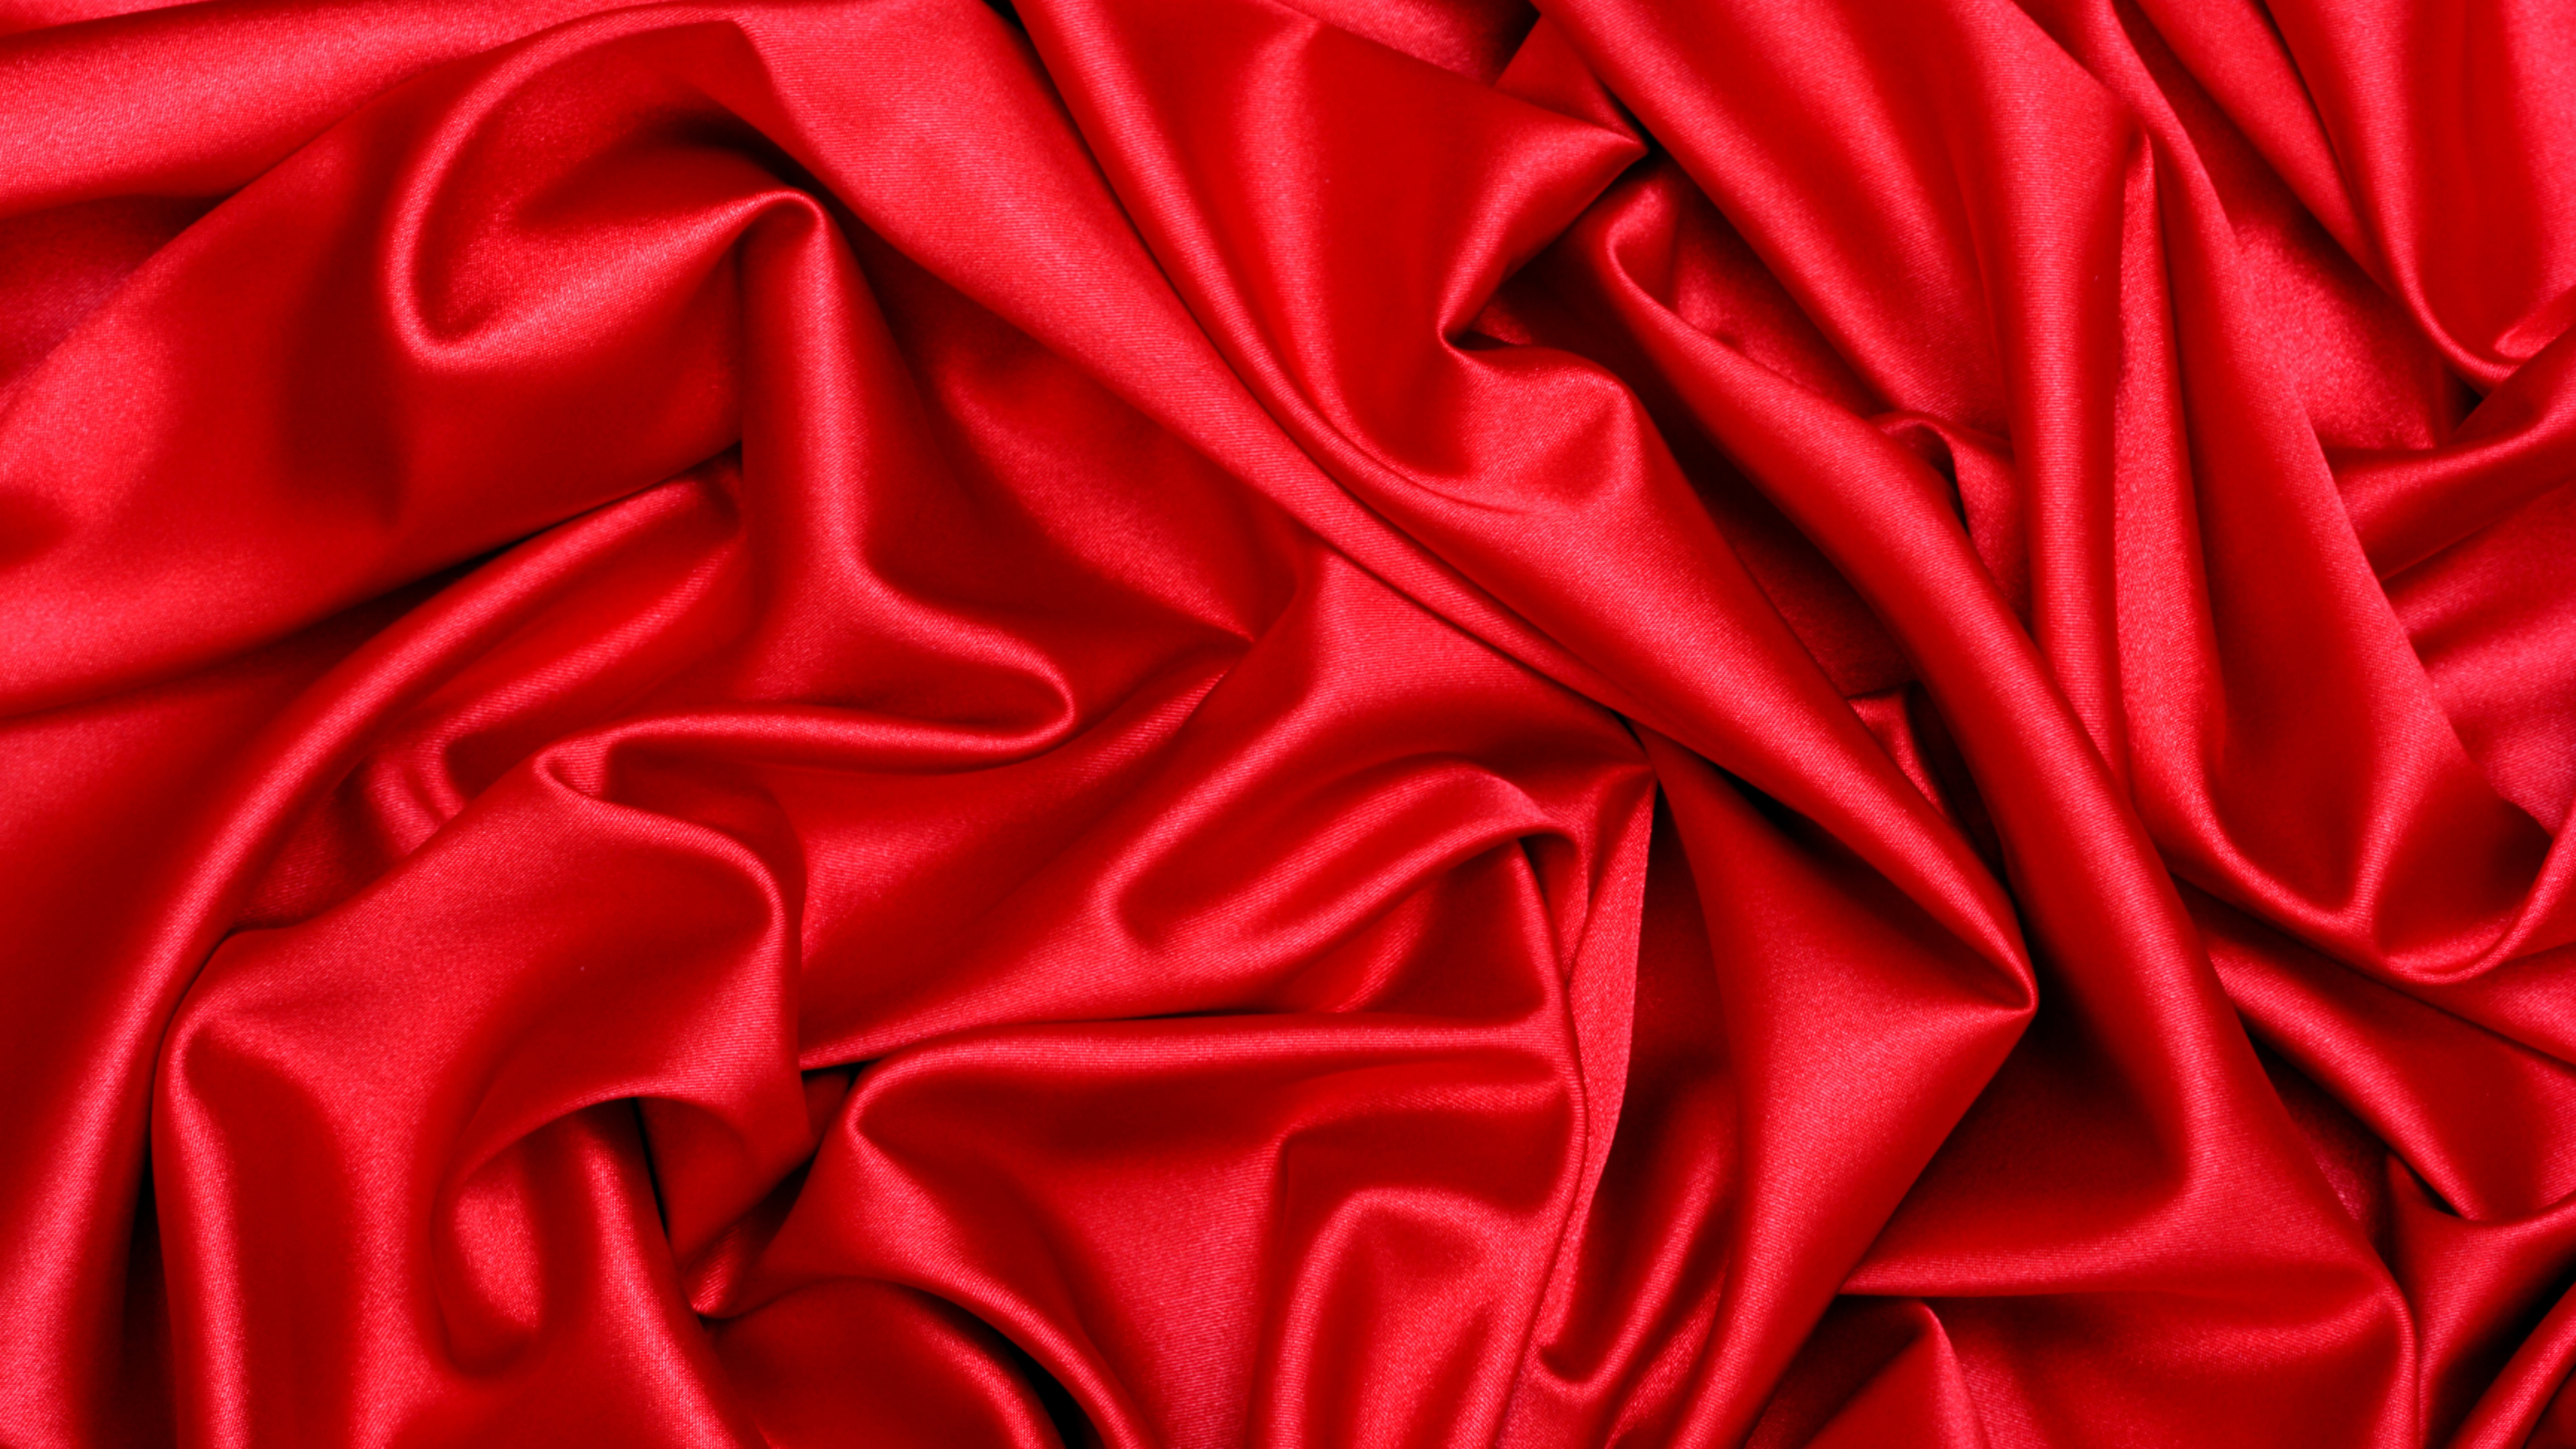 缎面, 丝绸, 红色的, 天鹅绒, 品红色 壁纸 3840x2160 允许